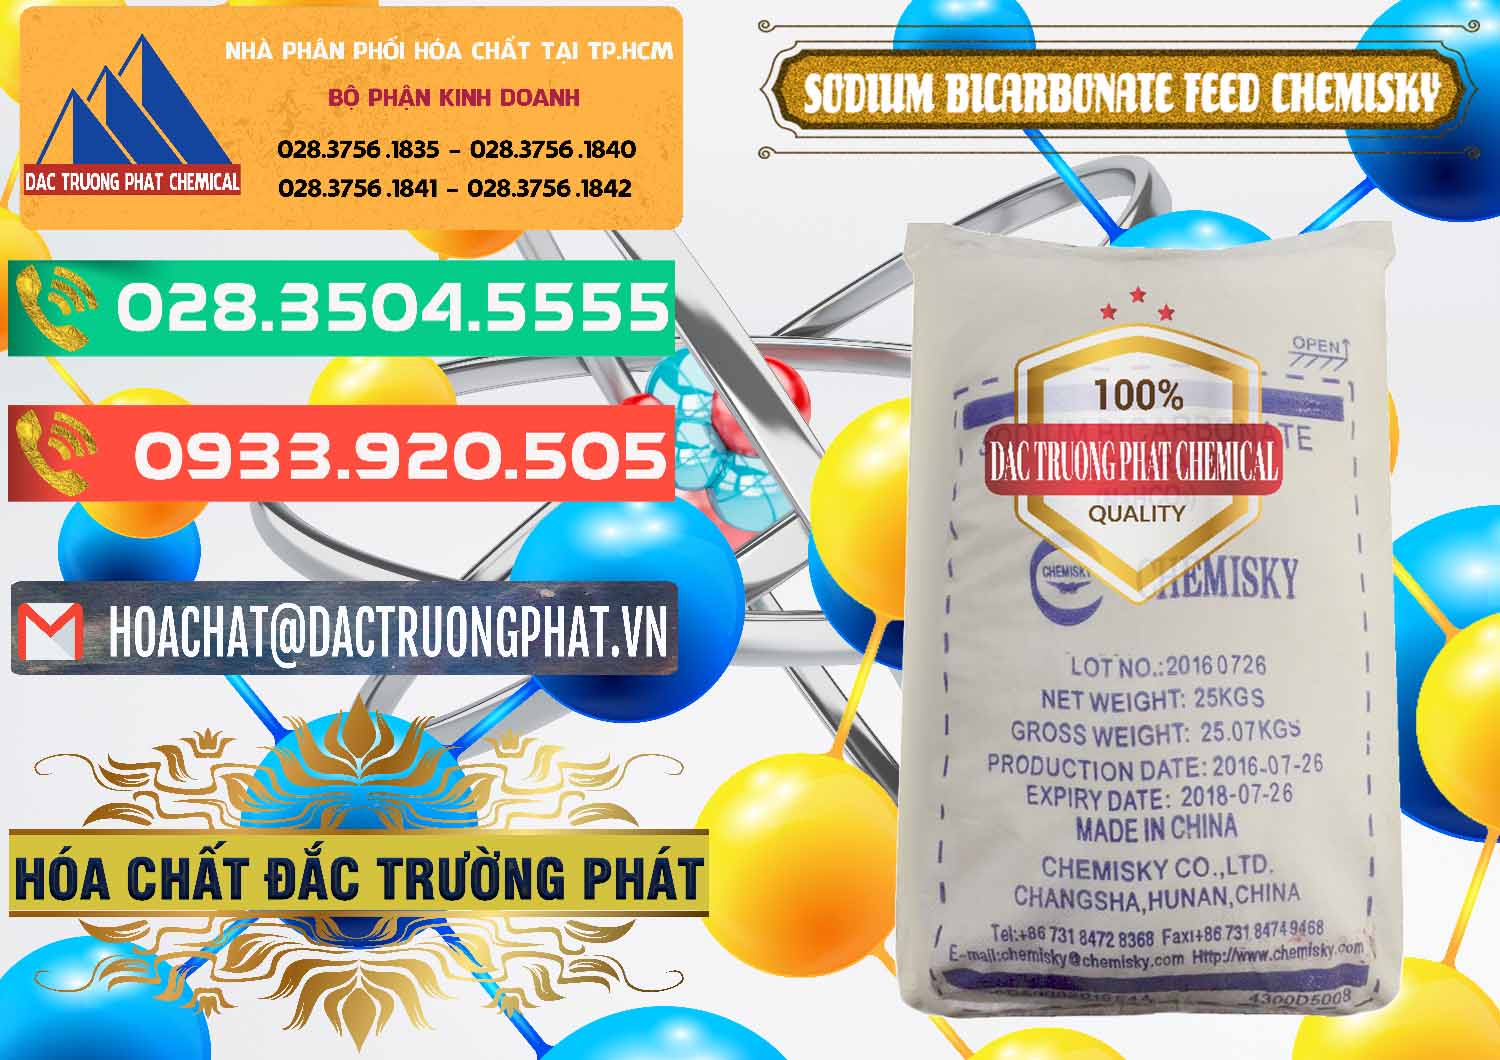 Nơi chuyên cung cấp - bán Sodium Bicarbonate – Bicar NaHCO3 Feed Grade Chemisky Trung Quốc China - 0264 - Cty bán _ cung cấp hóa chất tại TP.HCM - congtyhoachat.com.vn